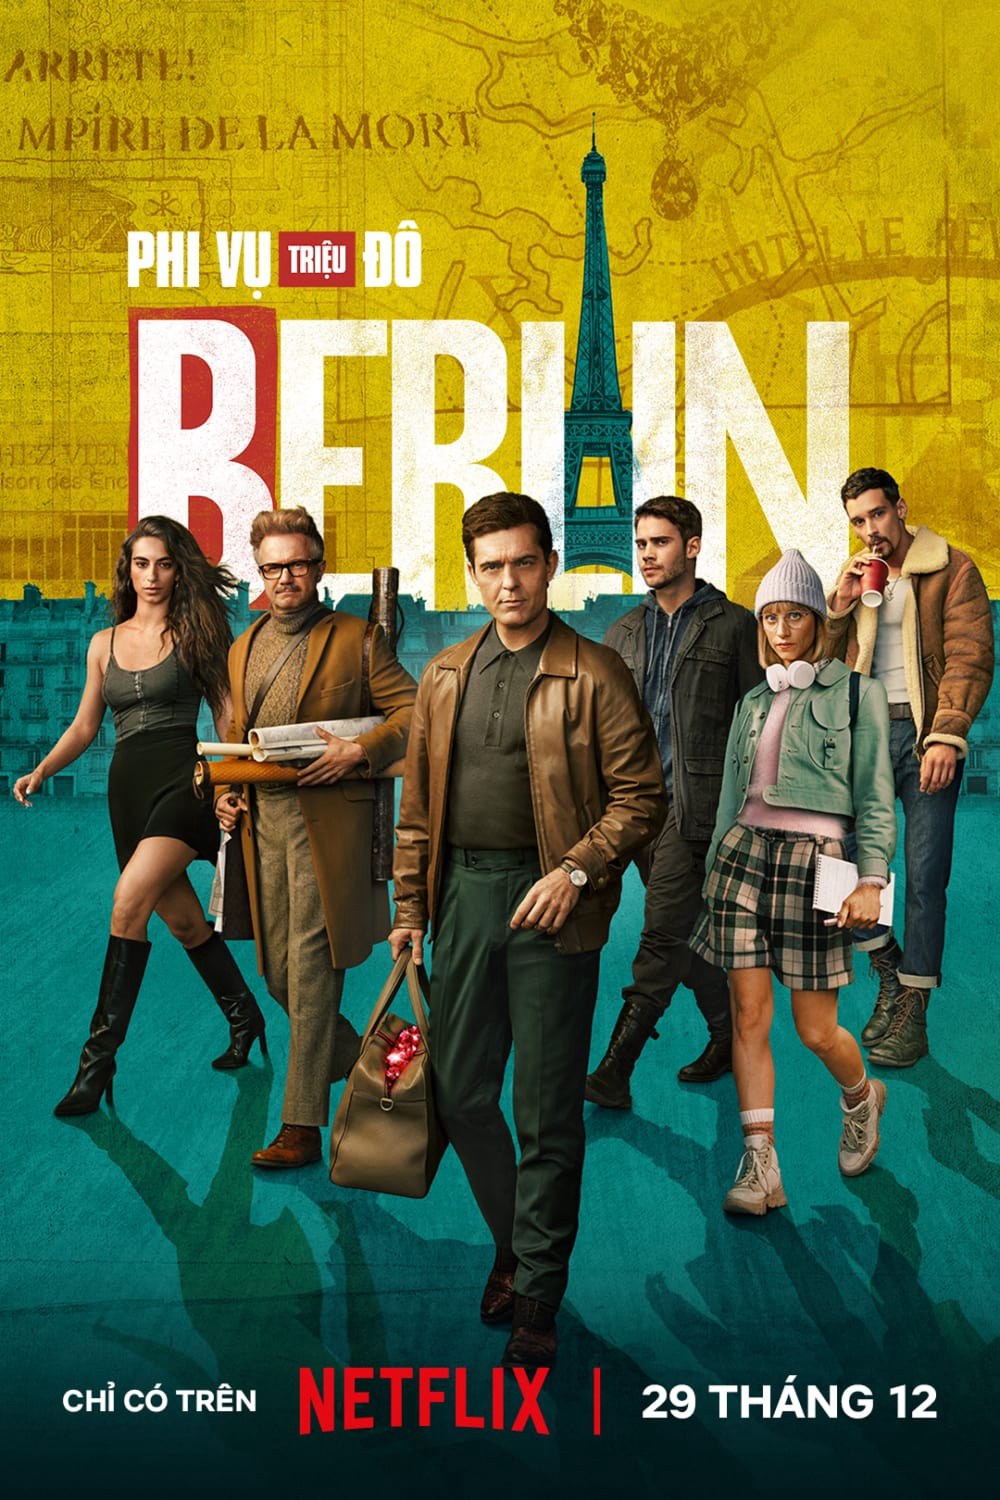 Phi Vụ Triệu Đô: Berlin - Berlin